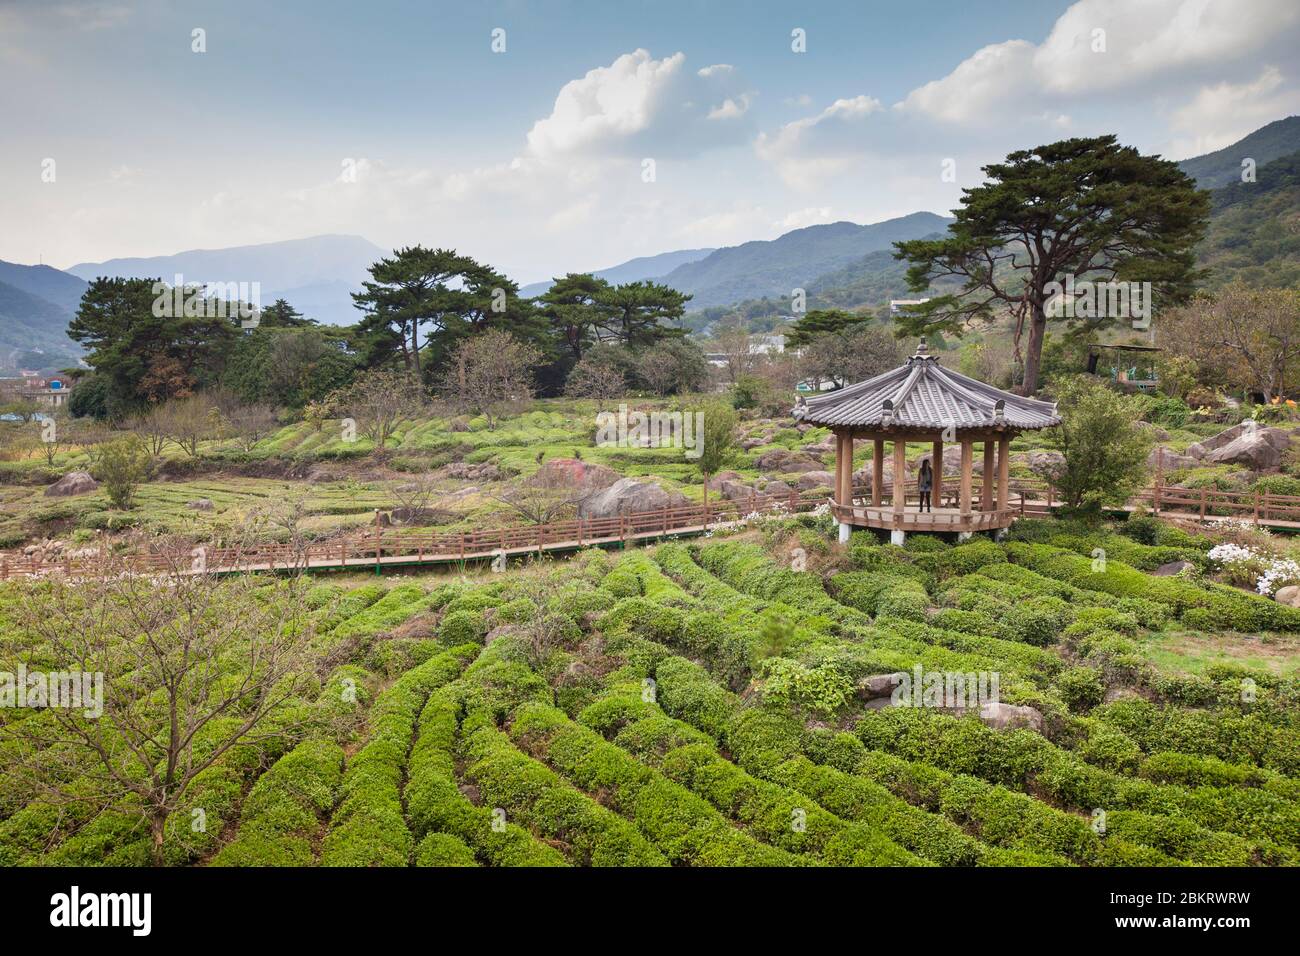 Corée du Sud, province de Gyeongsang Sud, Hadong, plantation de thé, montagnes et kiosque traditionnel en bois Banque D'Images